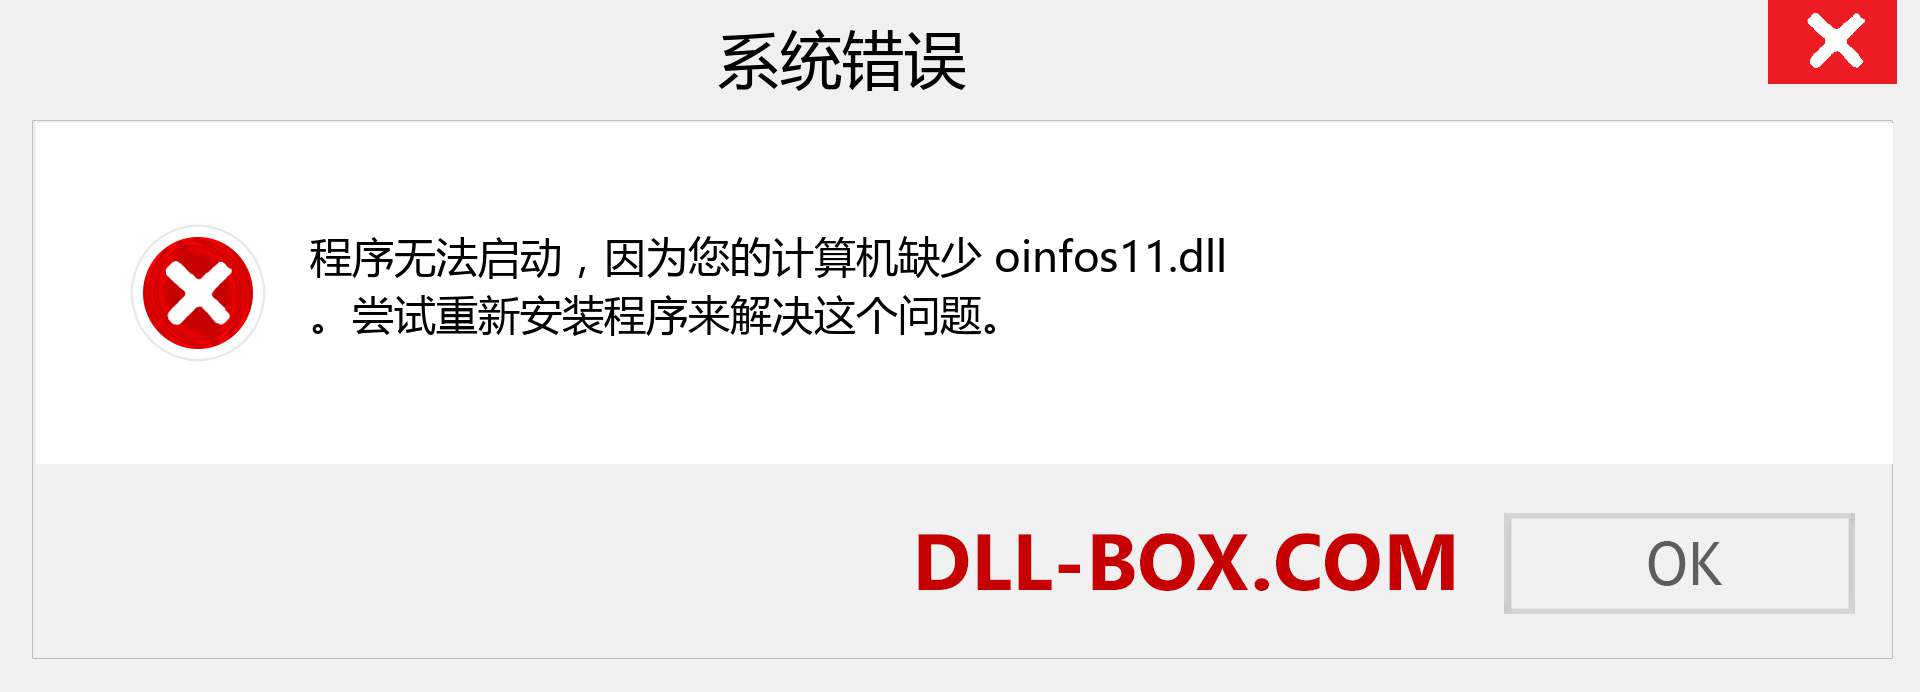 oinfos11.dll 文件丢失？。 适用于 Windows 7、8、10 的下载 - 修复 Windows、照片、图像上的 oinfos11 dll 丢失错误